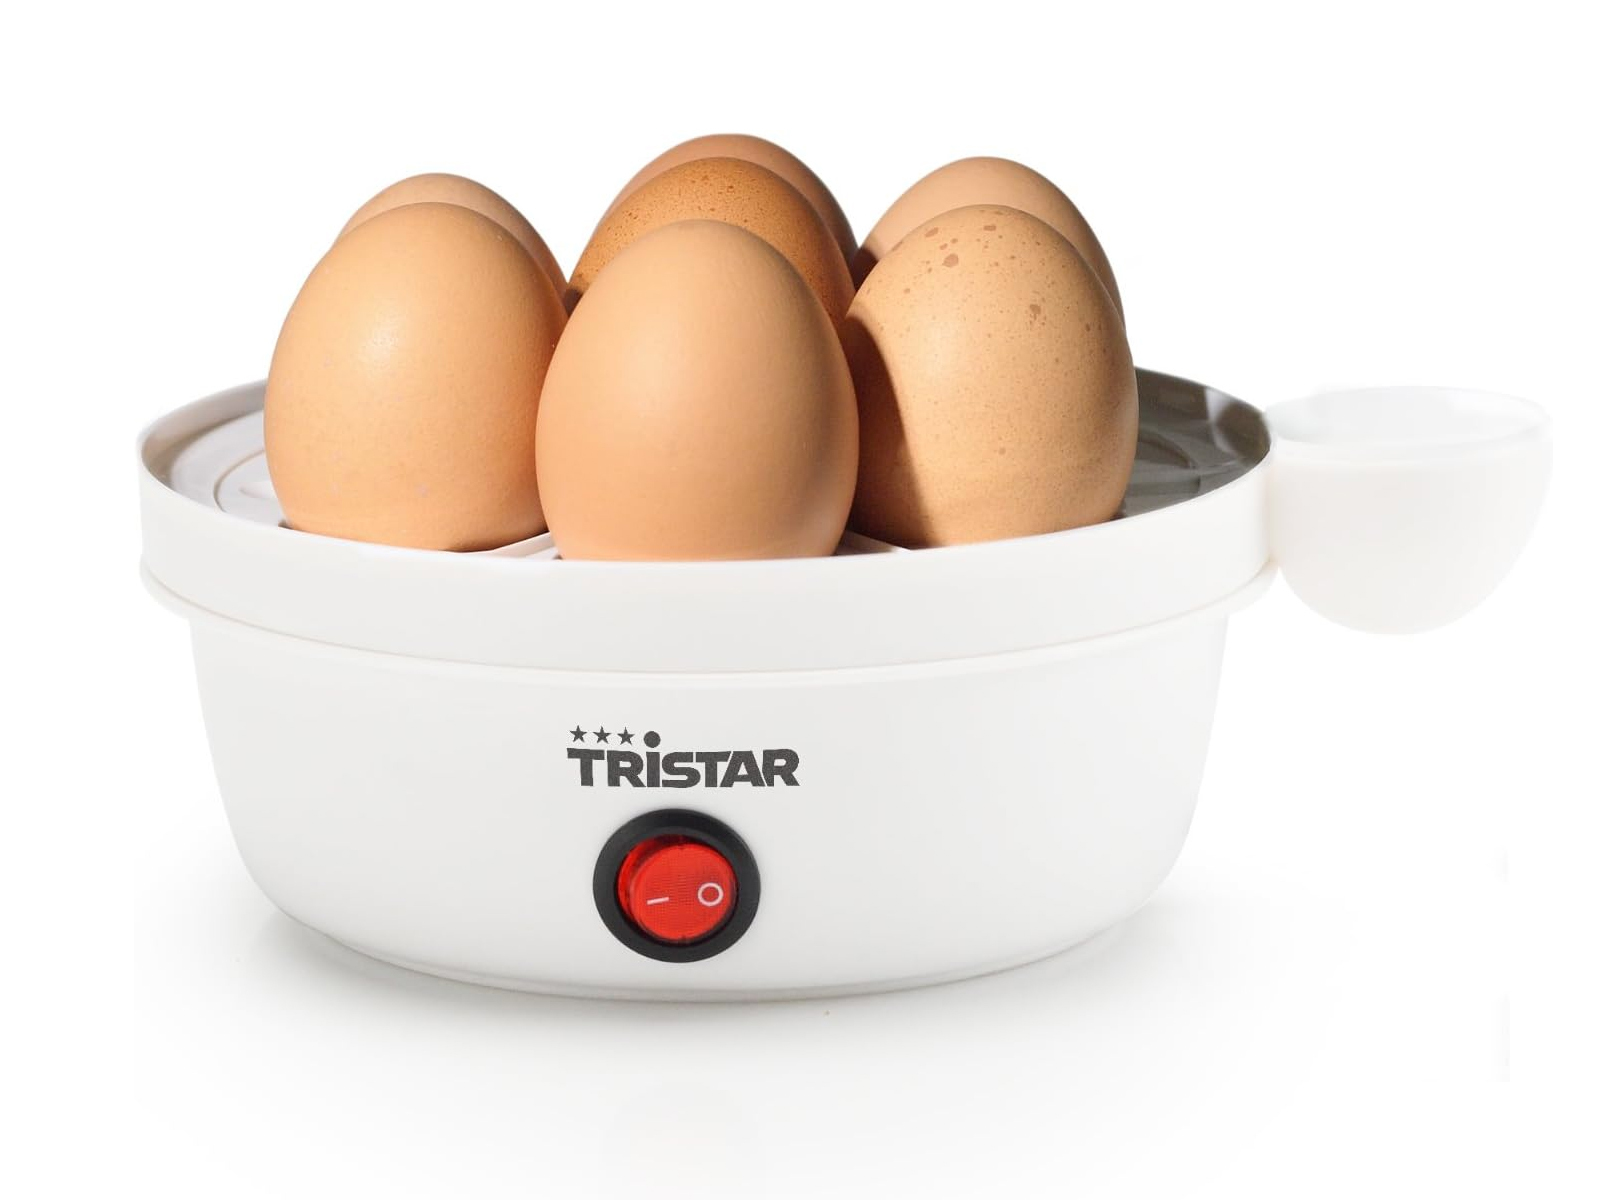 TRISTAR Egg-Cooker Eierkocher(Anzahl Eier: 7)